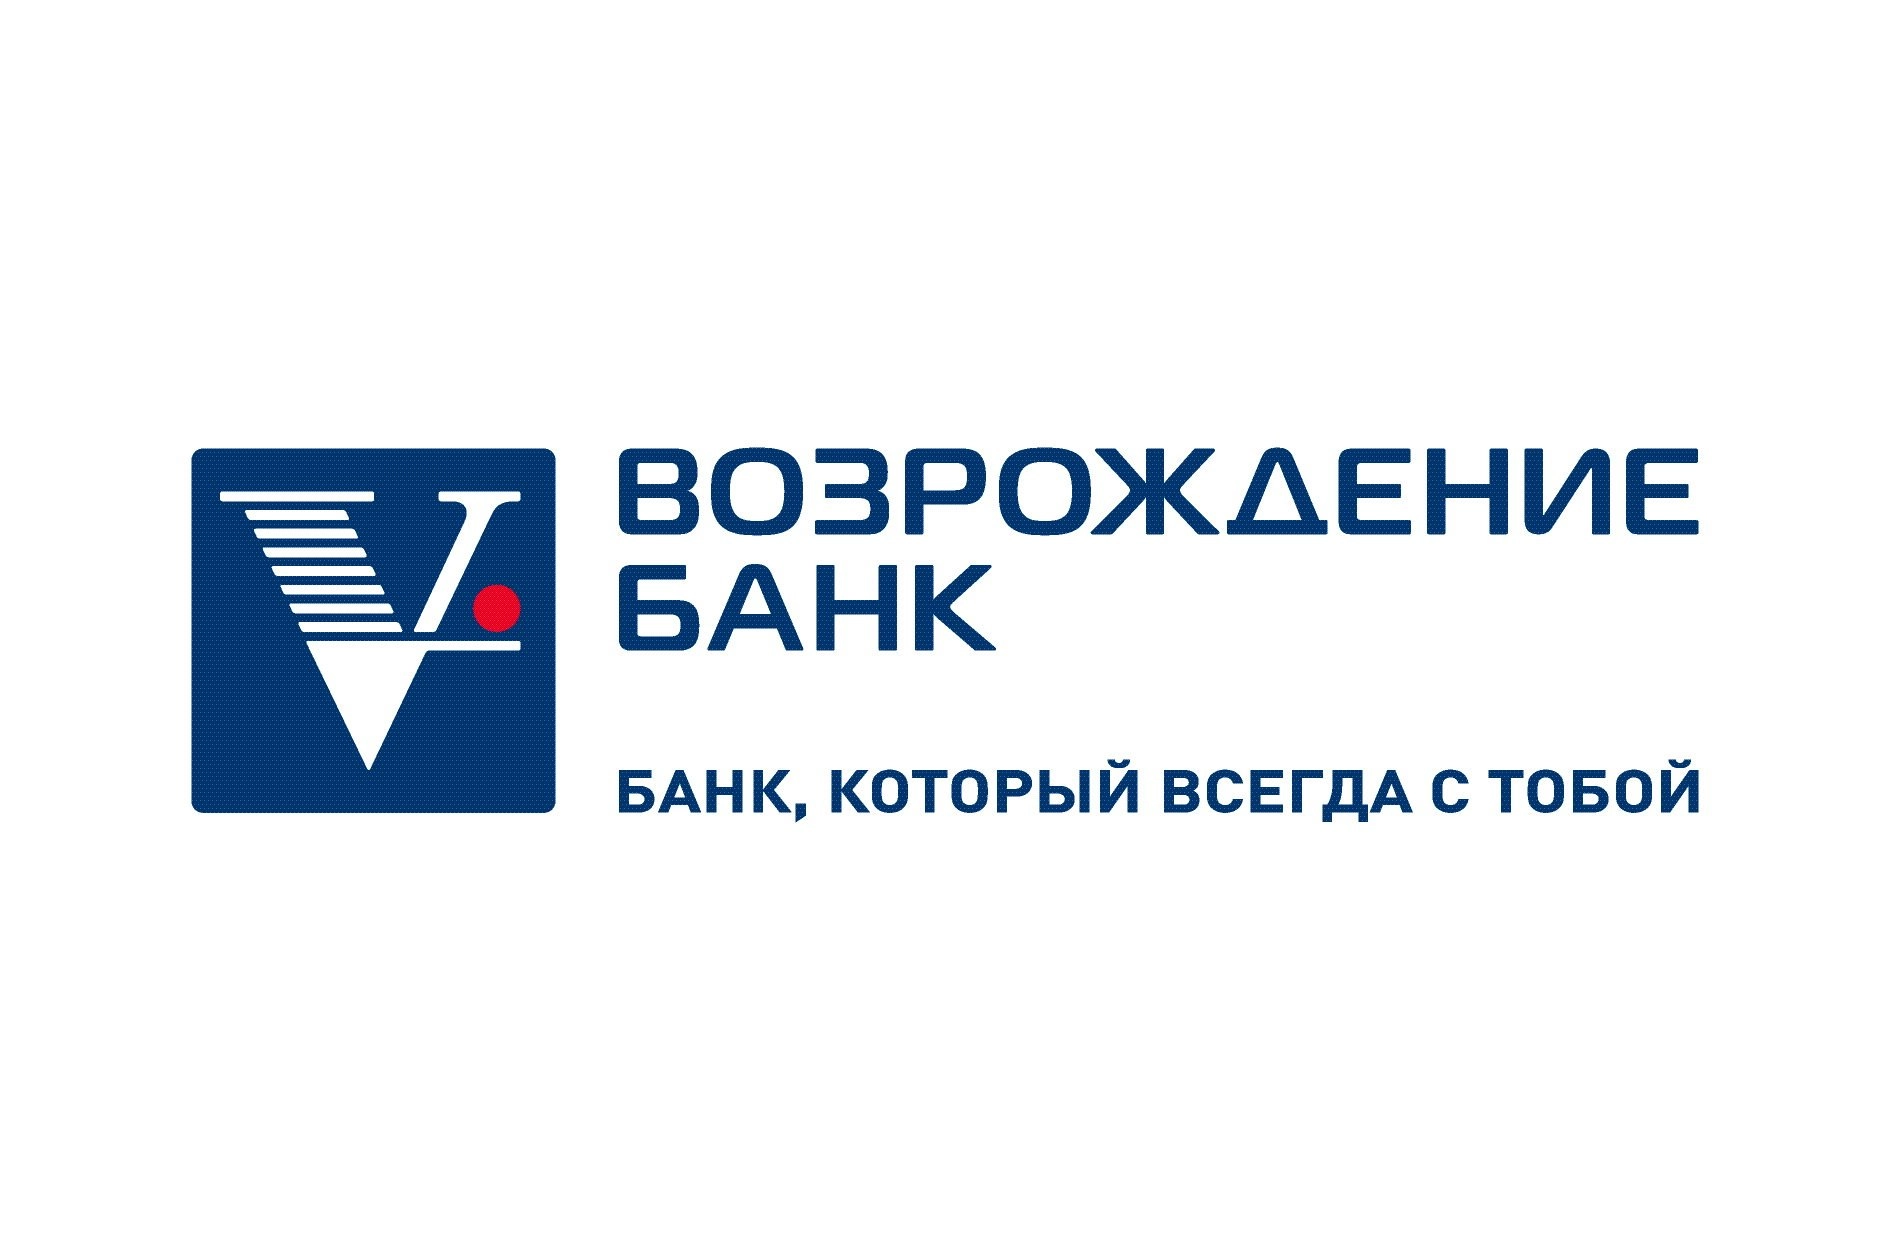 ТОП-10 акций финансового сектора РФ